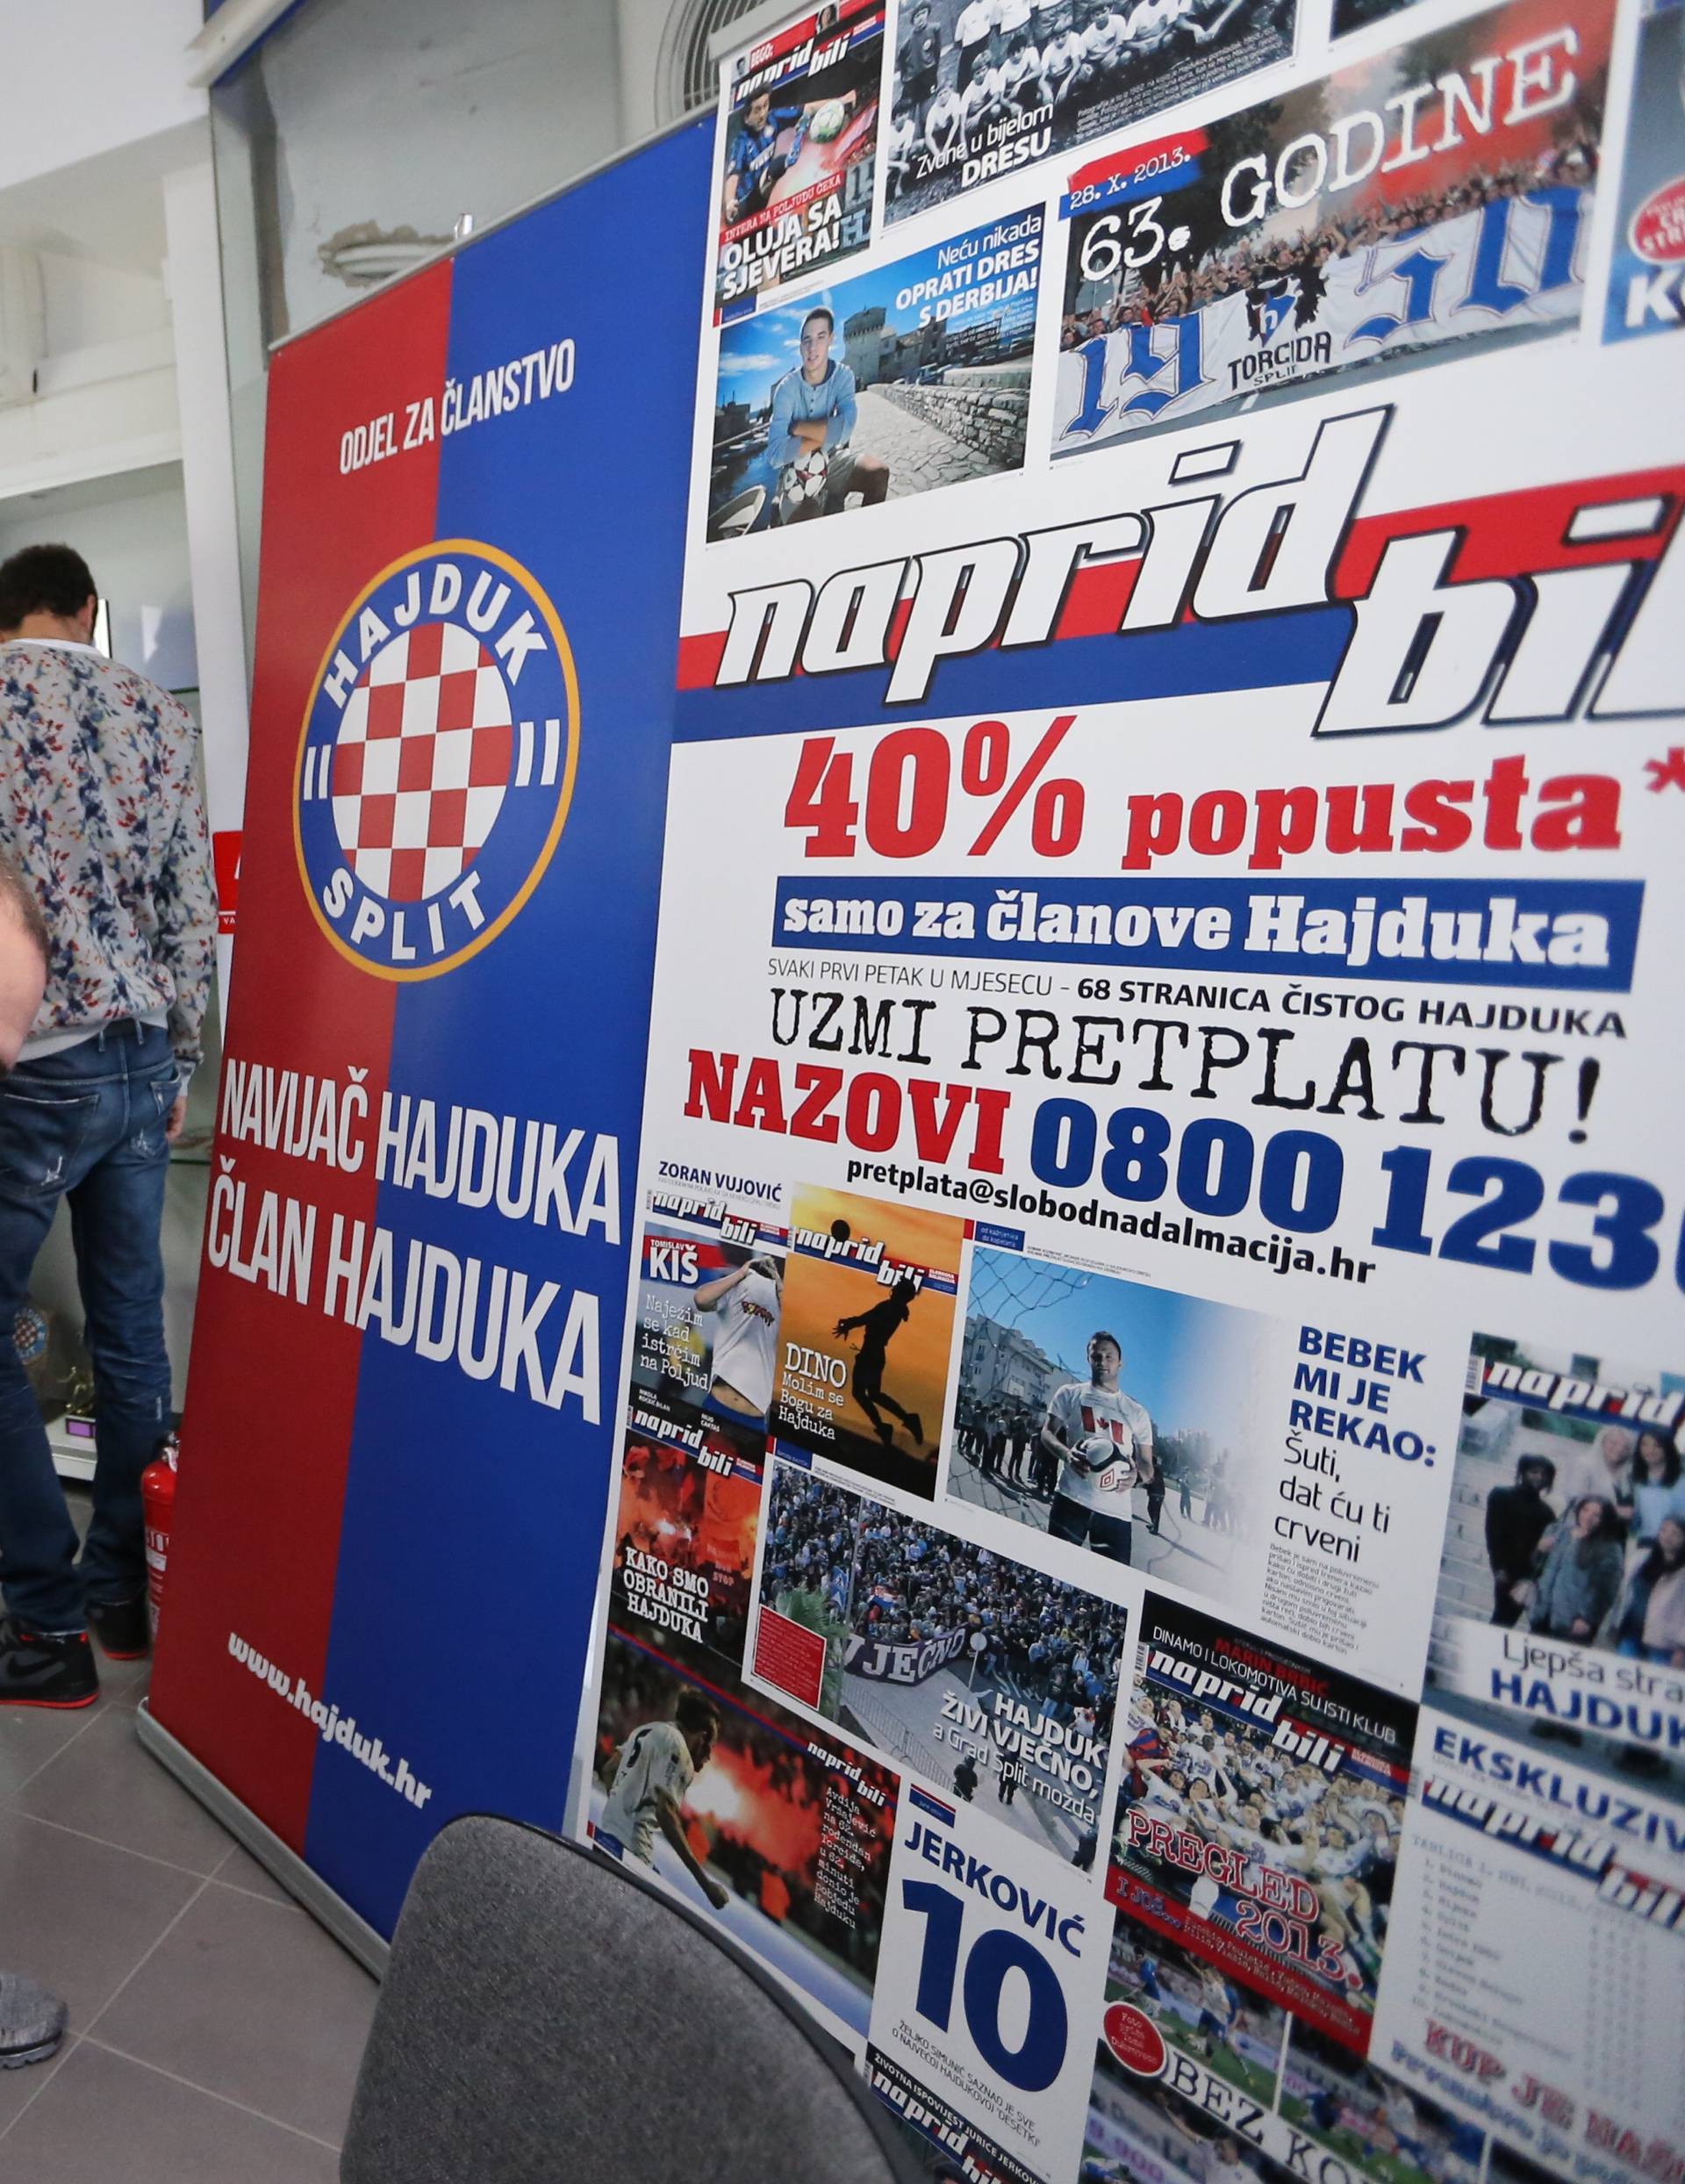 Navijači Hajduka kupili dionice  Kerumove firme u stečaju  i sada imaju  30.12% vlasništva kluba!